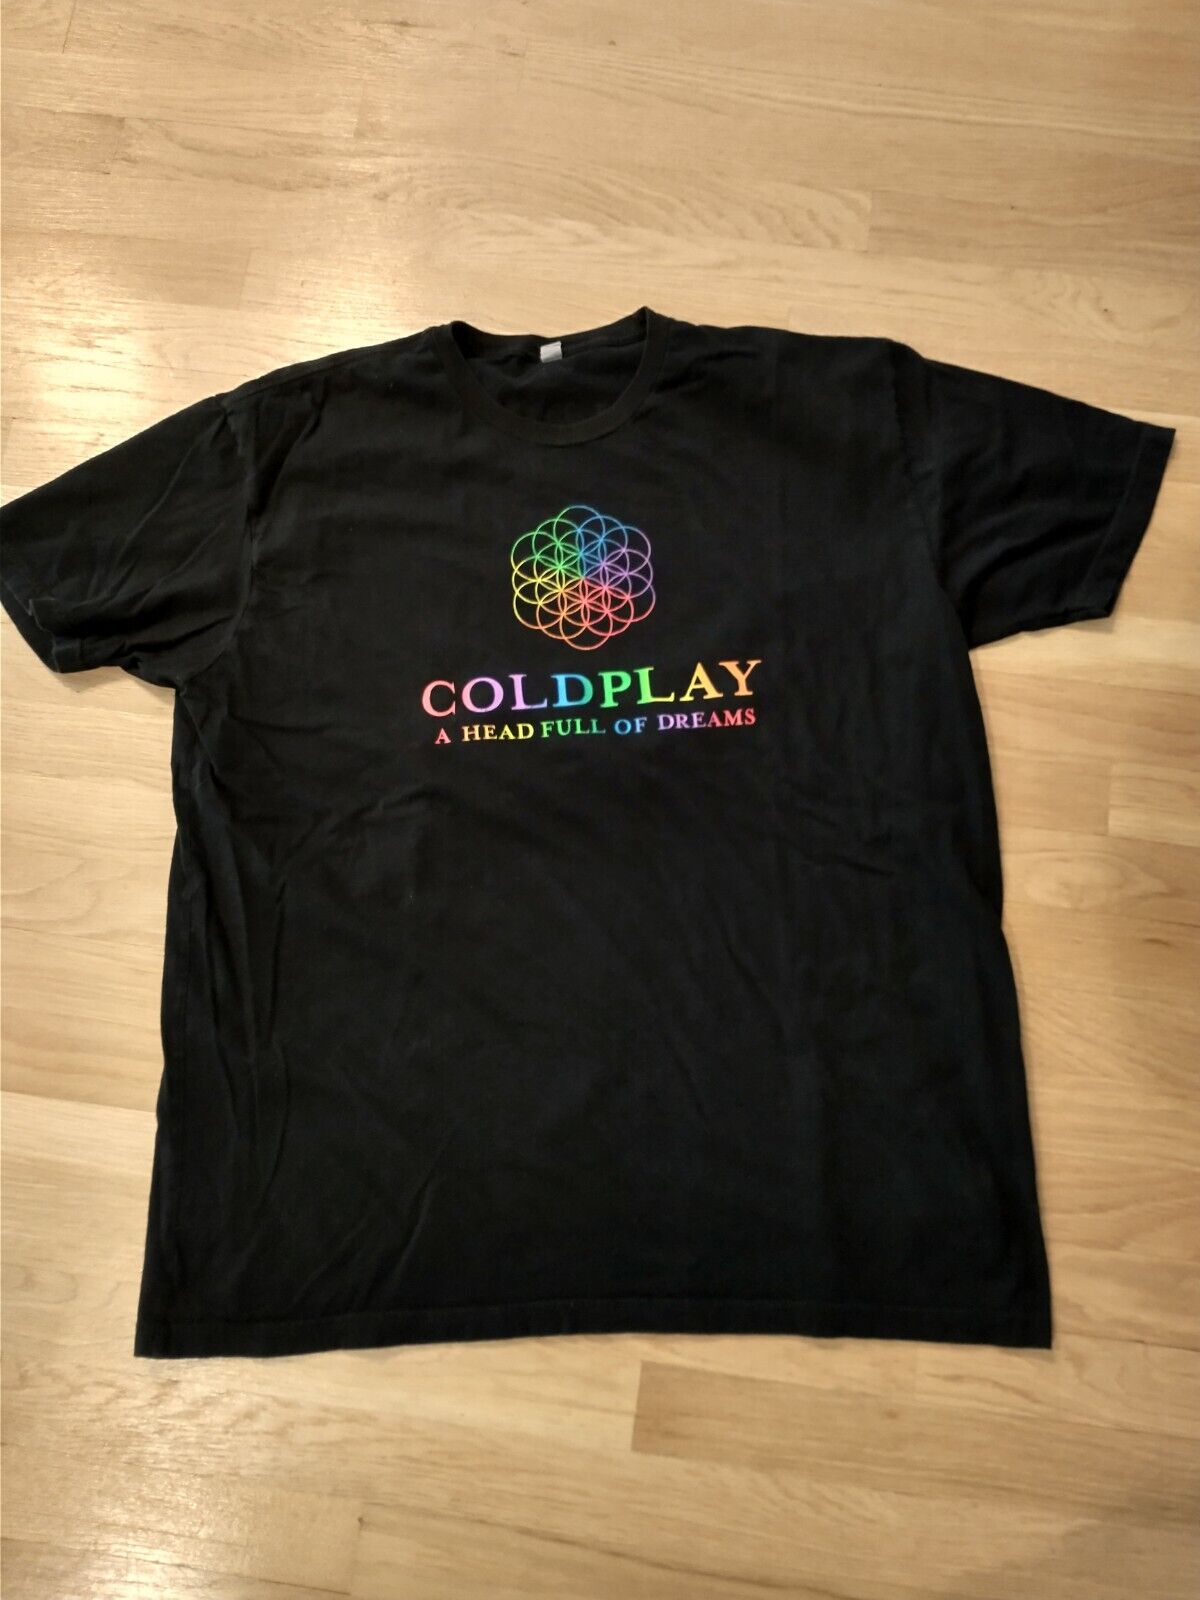 Coldplay Concert T-shirt World Tour 2016 - Men's Xxl